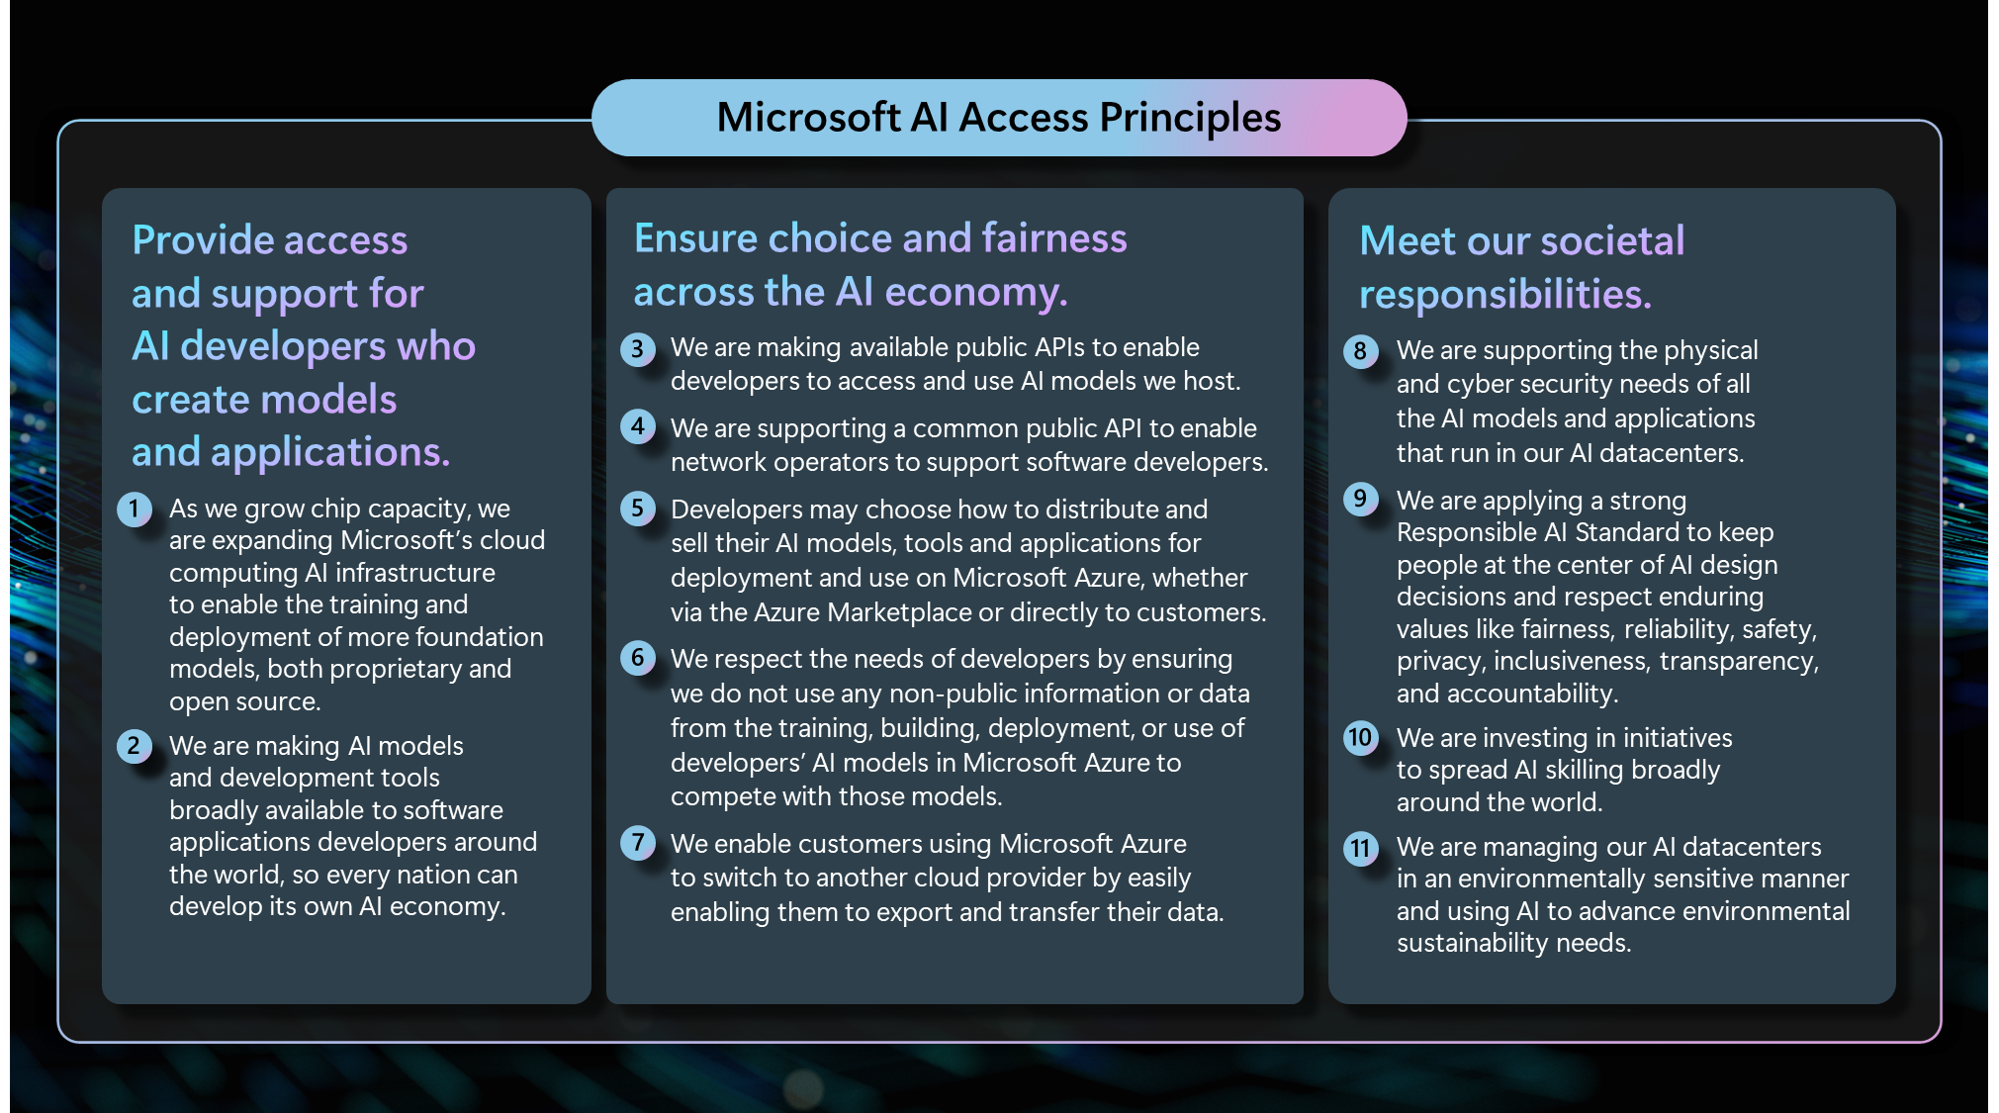 Microsoft AI access principles